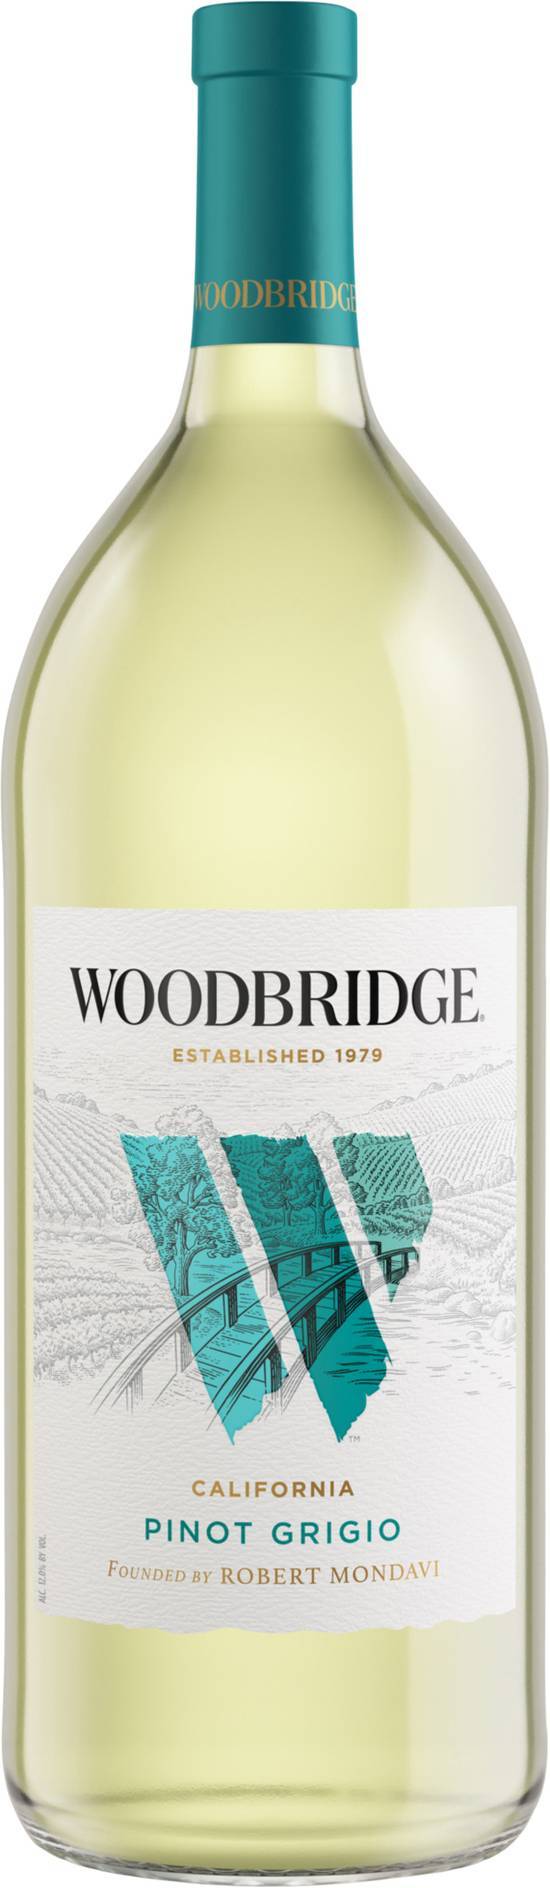 Woodbridge Robert Mondavi Pinot Grigio White Wine (1.5 L)